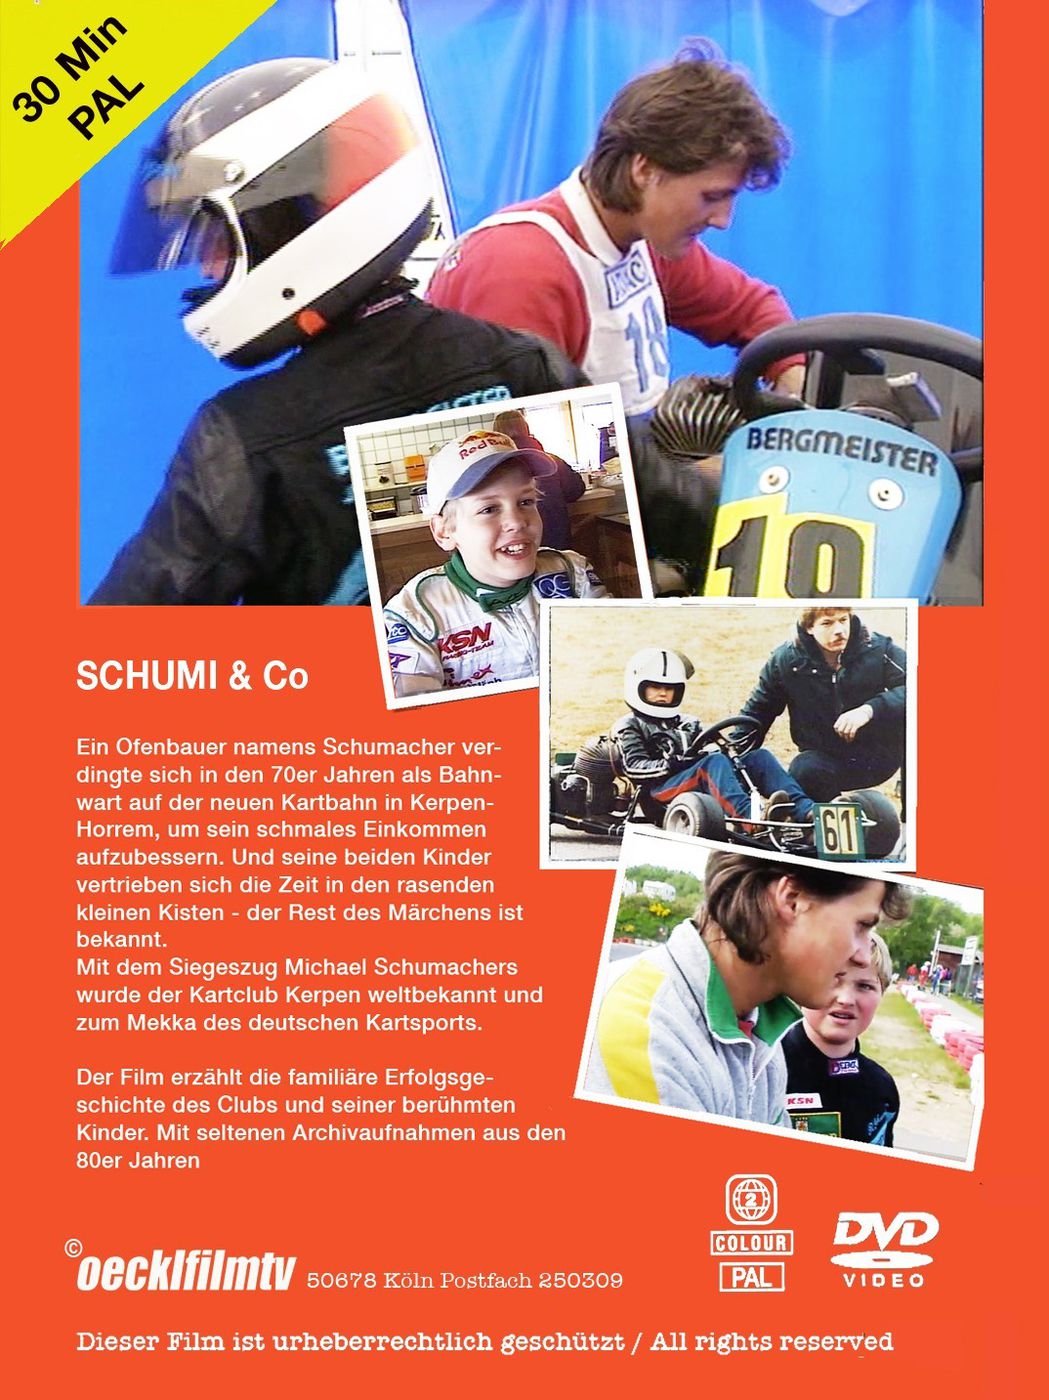 Schumi & Co
Schumi & Co
Schumi & Co